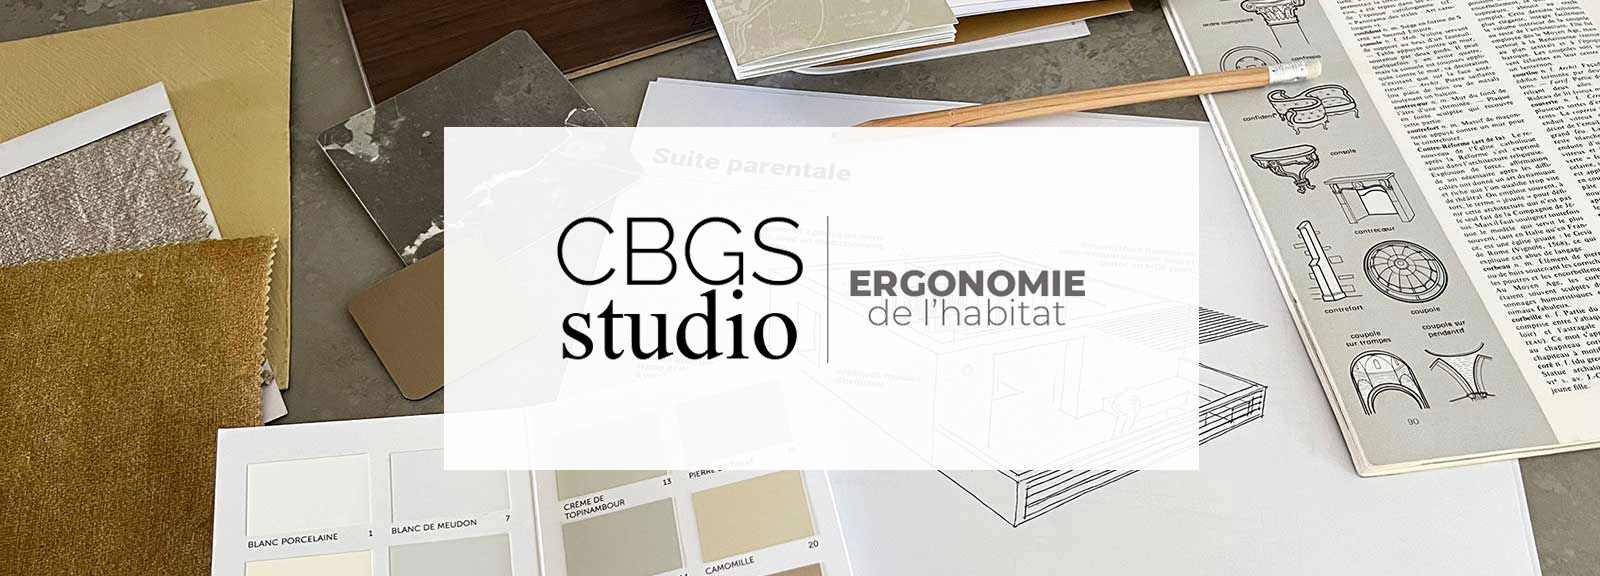 CBGS studio